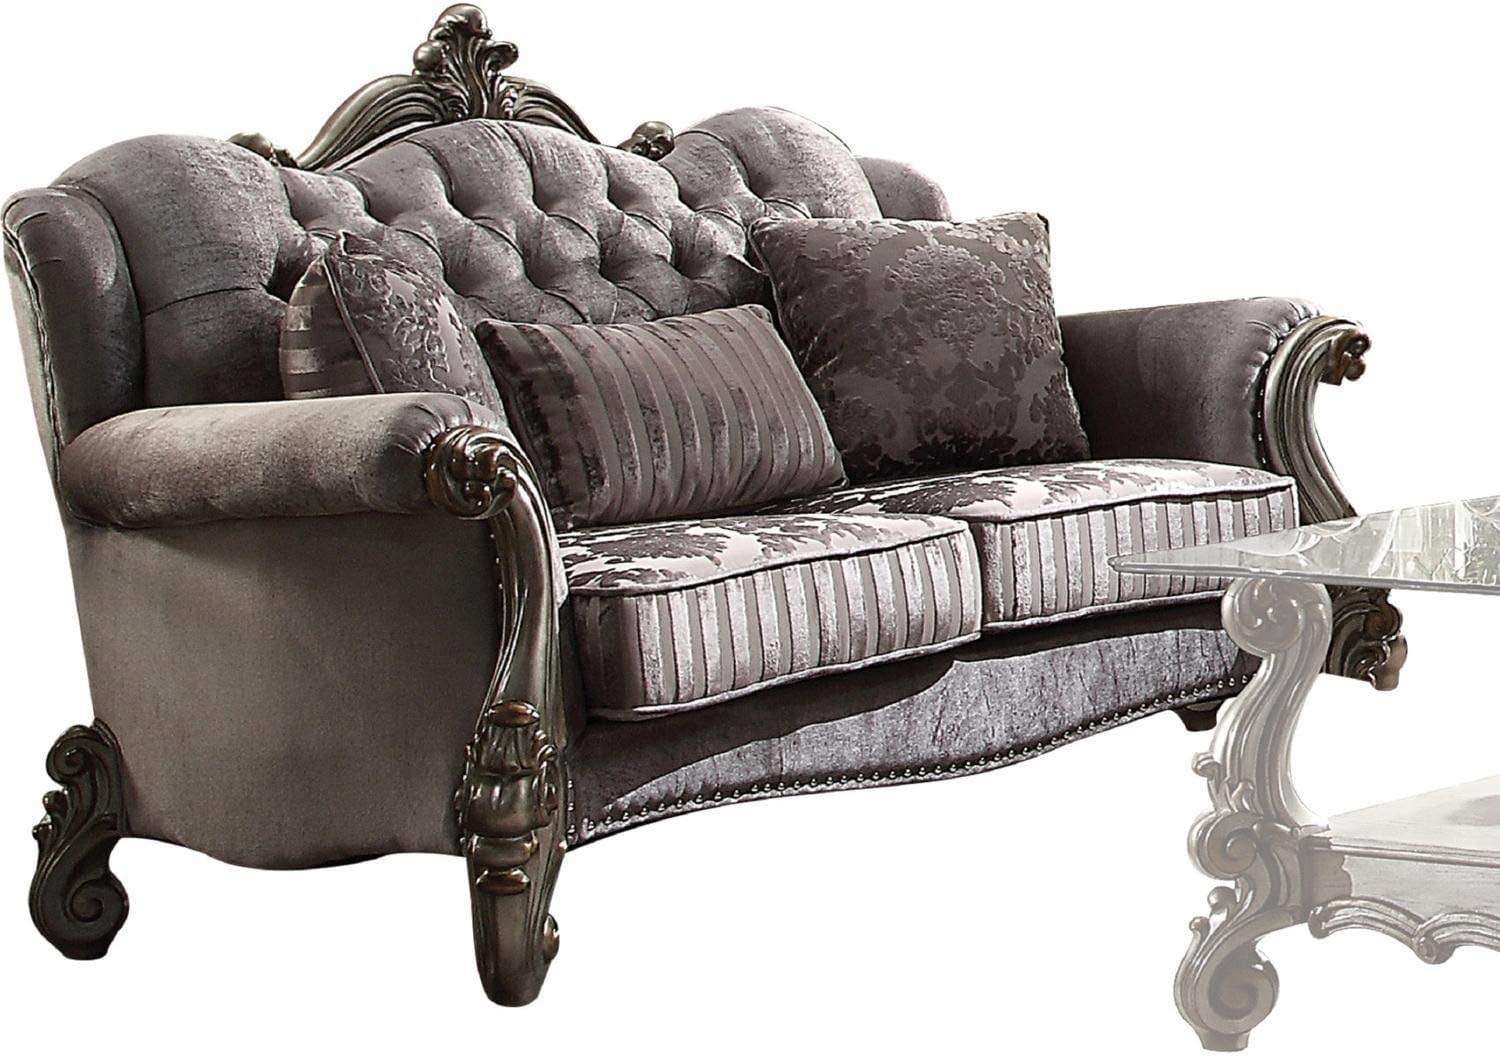 

        
Acme Furniture Versailles 56840 56841 56842 Sofa Set Platinum/Antique/Silver/Gray Velvet 0840412148712
